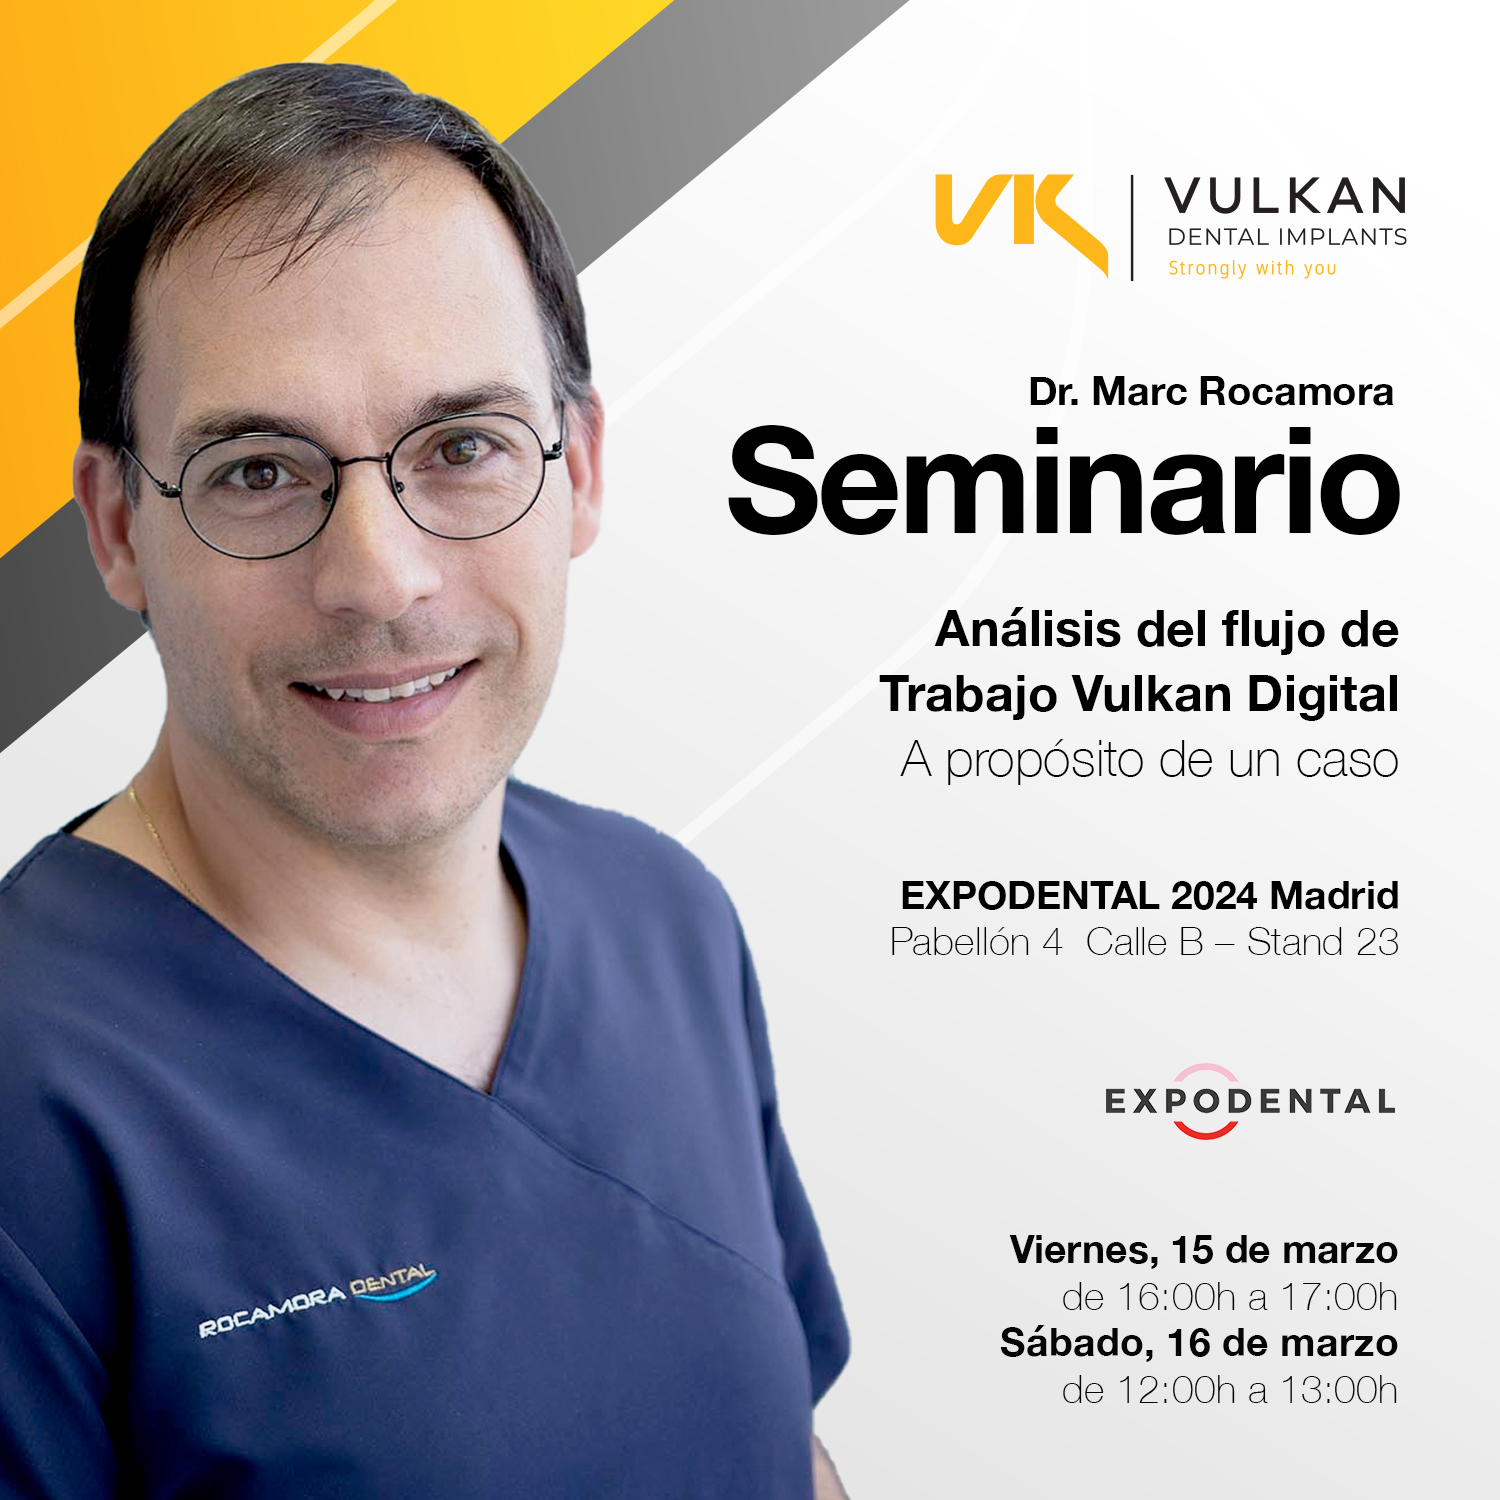 Seminario Vulkan Implants con el Dr. Marc Rocamora